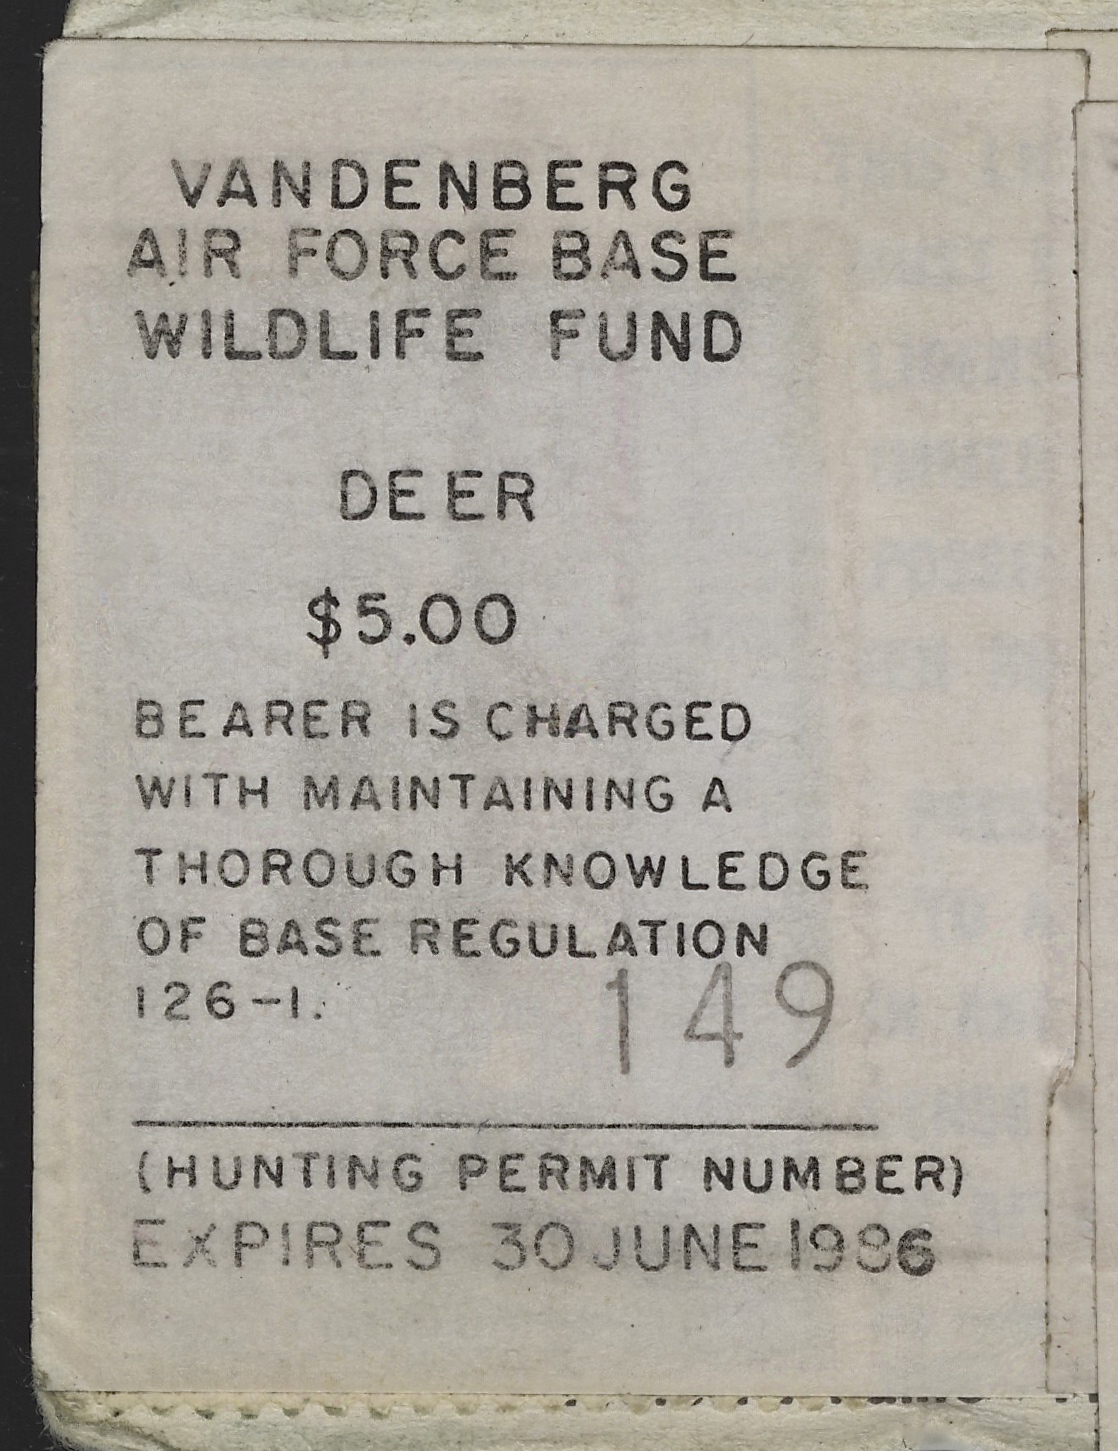 1985-86 VAFB Deer